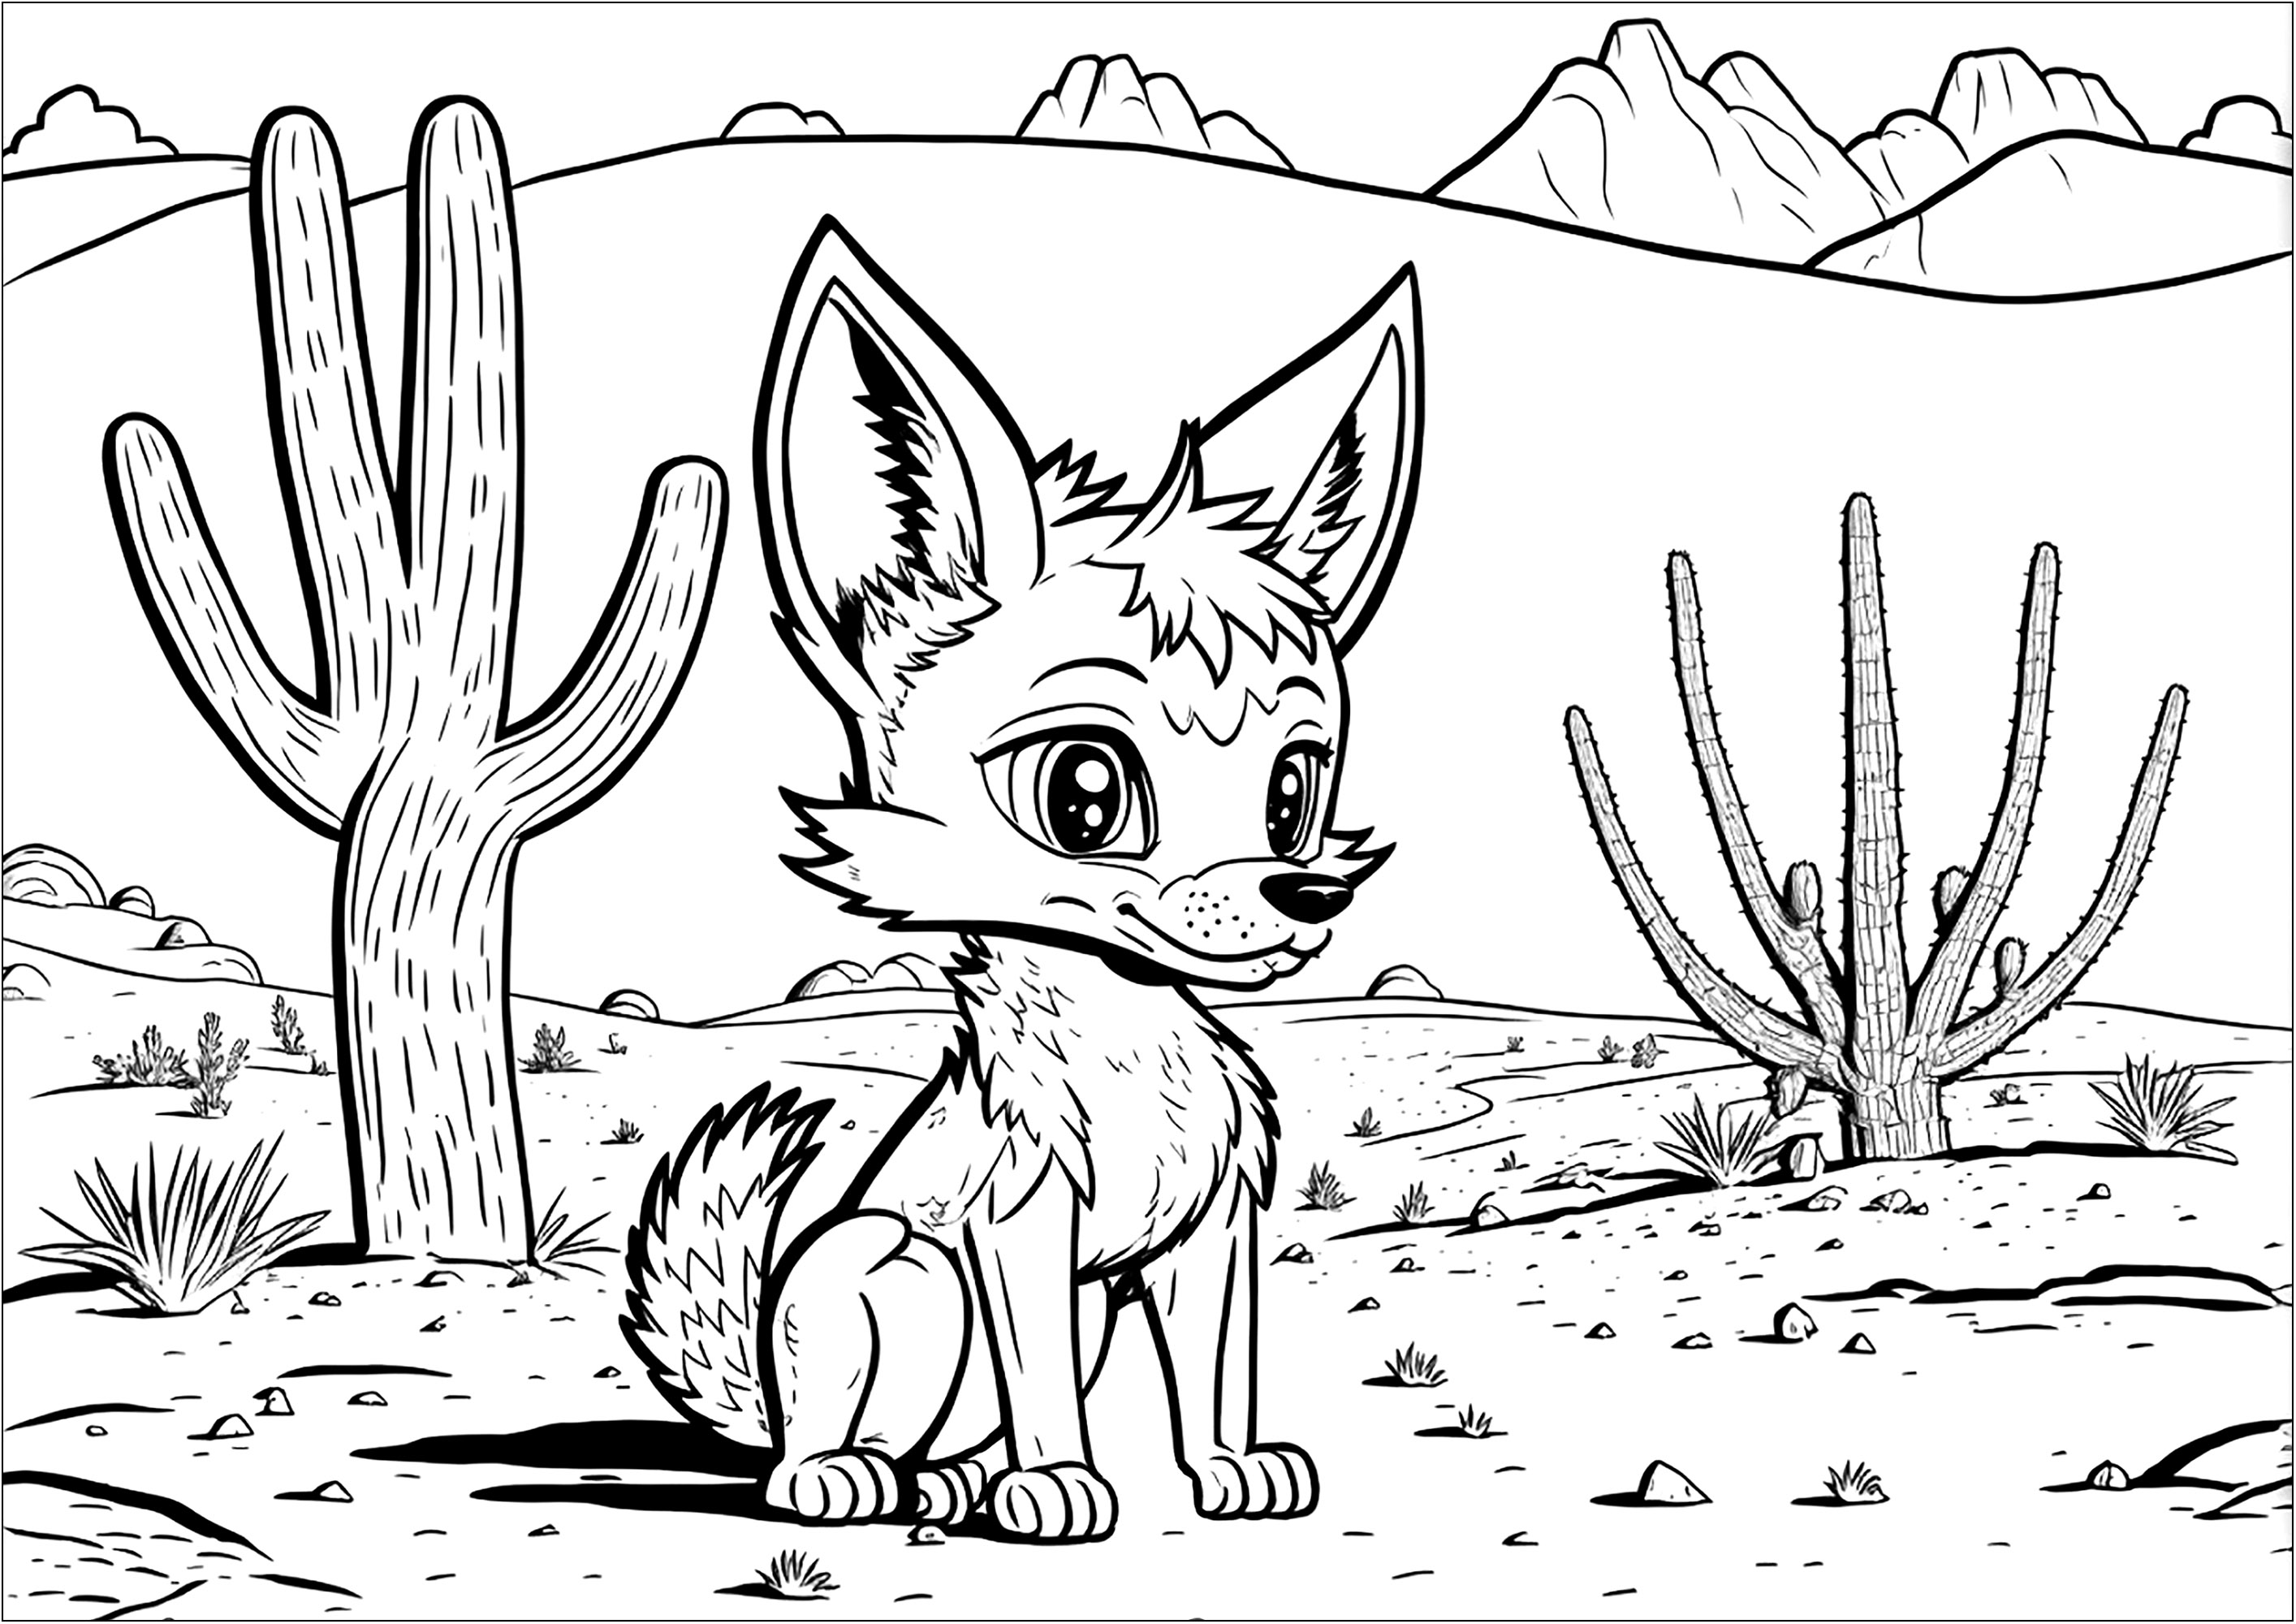 Laisse ta créativité s'exprimer en coloriant ce renard et le paysage du désert dans lequel il se situe. Des cactus, des montagnes et des rochers se dressent derrière ce jeune renard, attendant d'être coloriés.